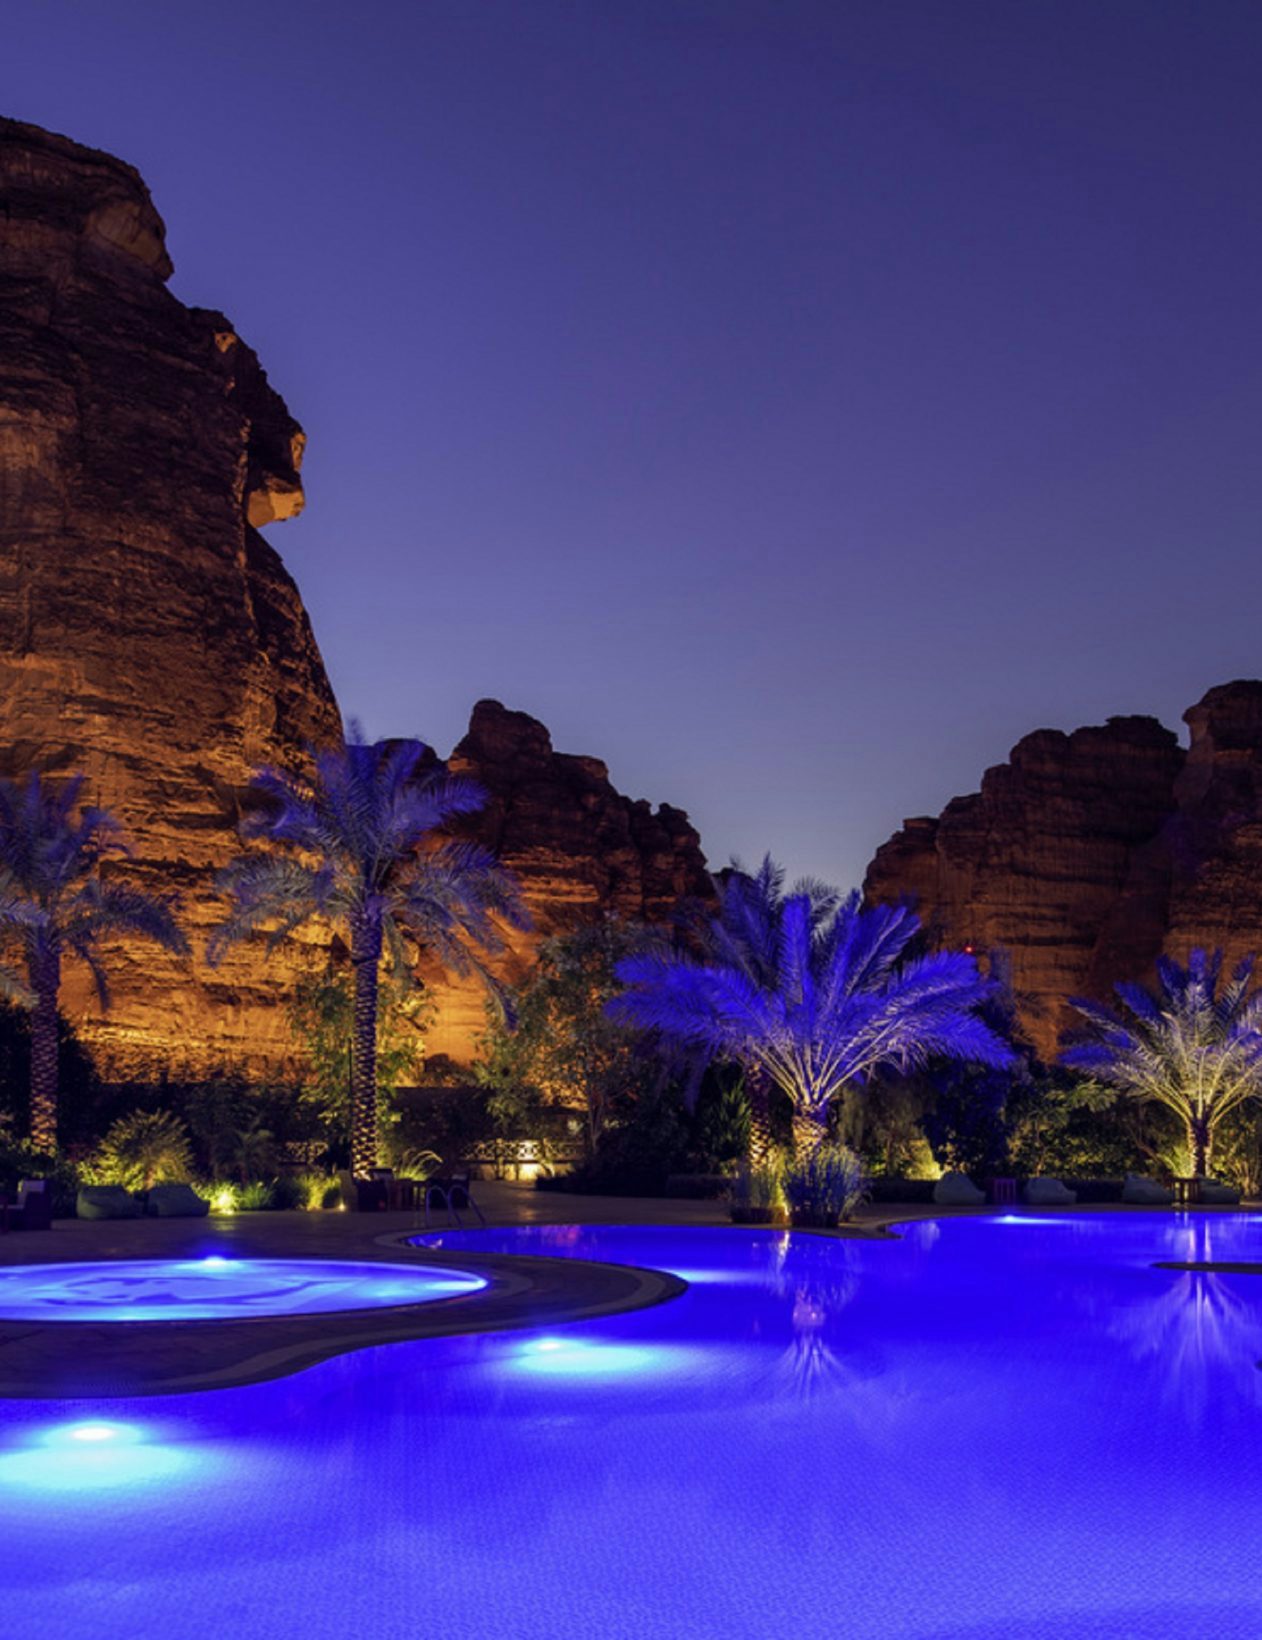 Accor lance trois projets hôteliers d’envergure en Arabie saoudite